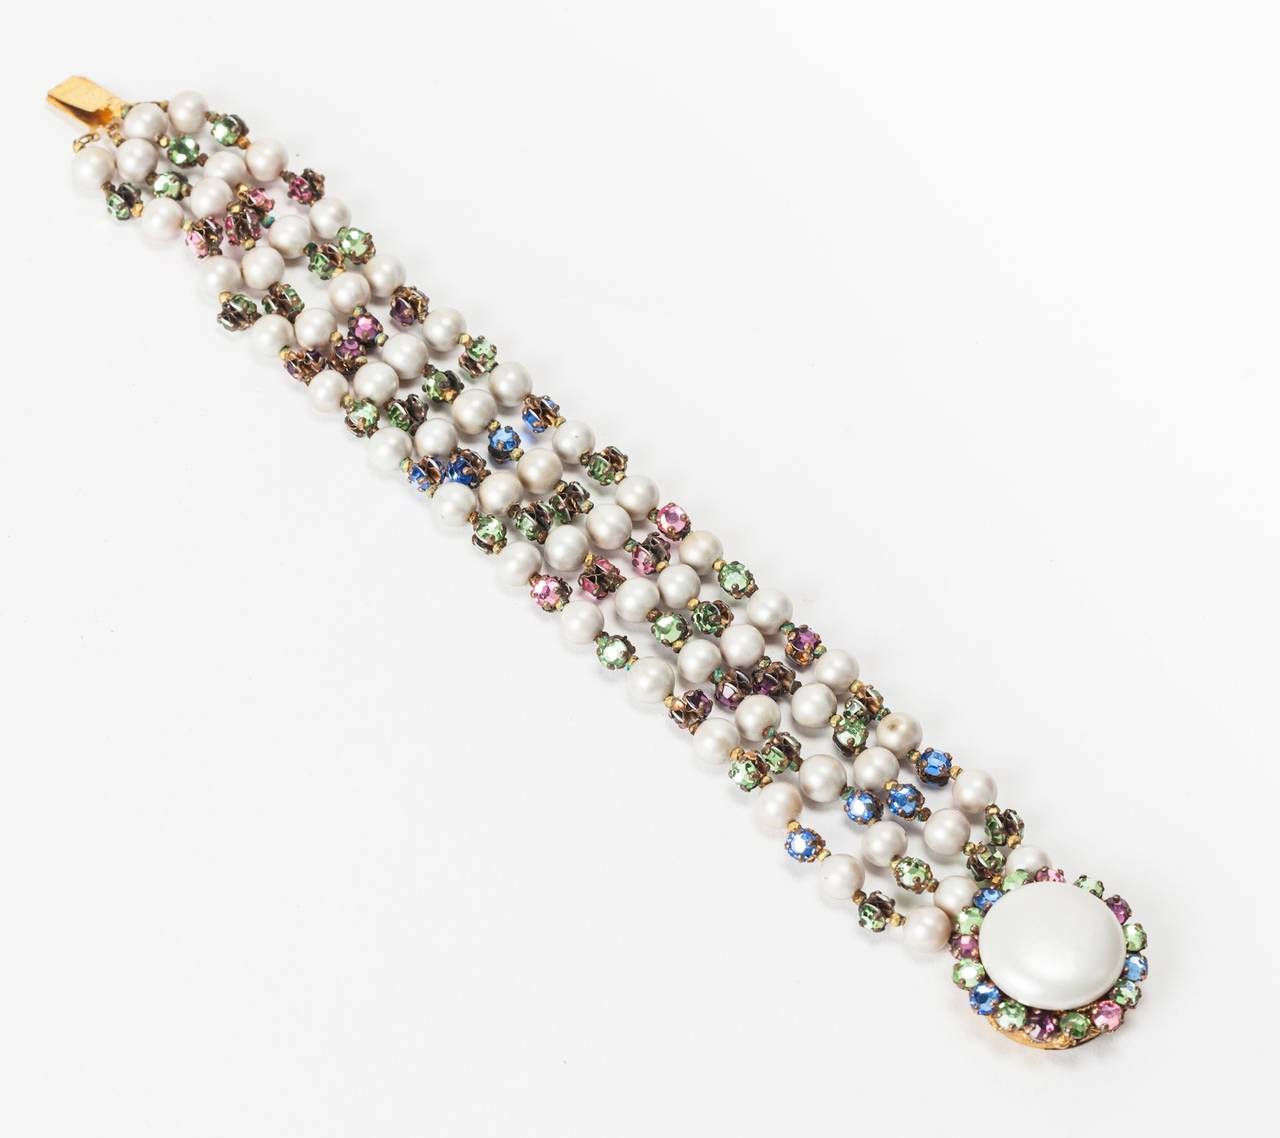 Ravissant bracelet Miriam Haskell à quatre brins composé de fausses perles d'eau douce et d'intercalaires en cristaux roses montés cousus à la main. Fermoir à bouton rond en perles bordé de montes roses pastel. états-Unis des années 1940. Excellent